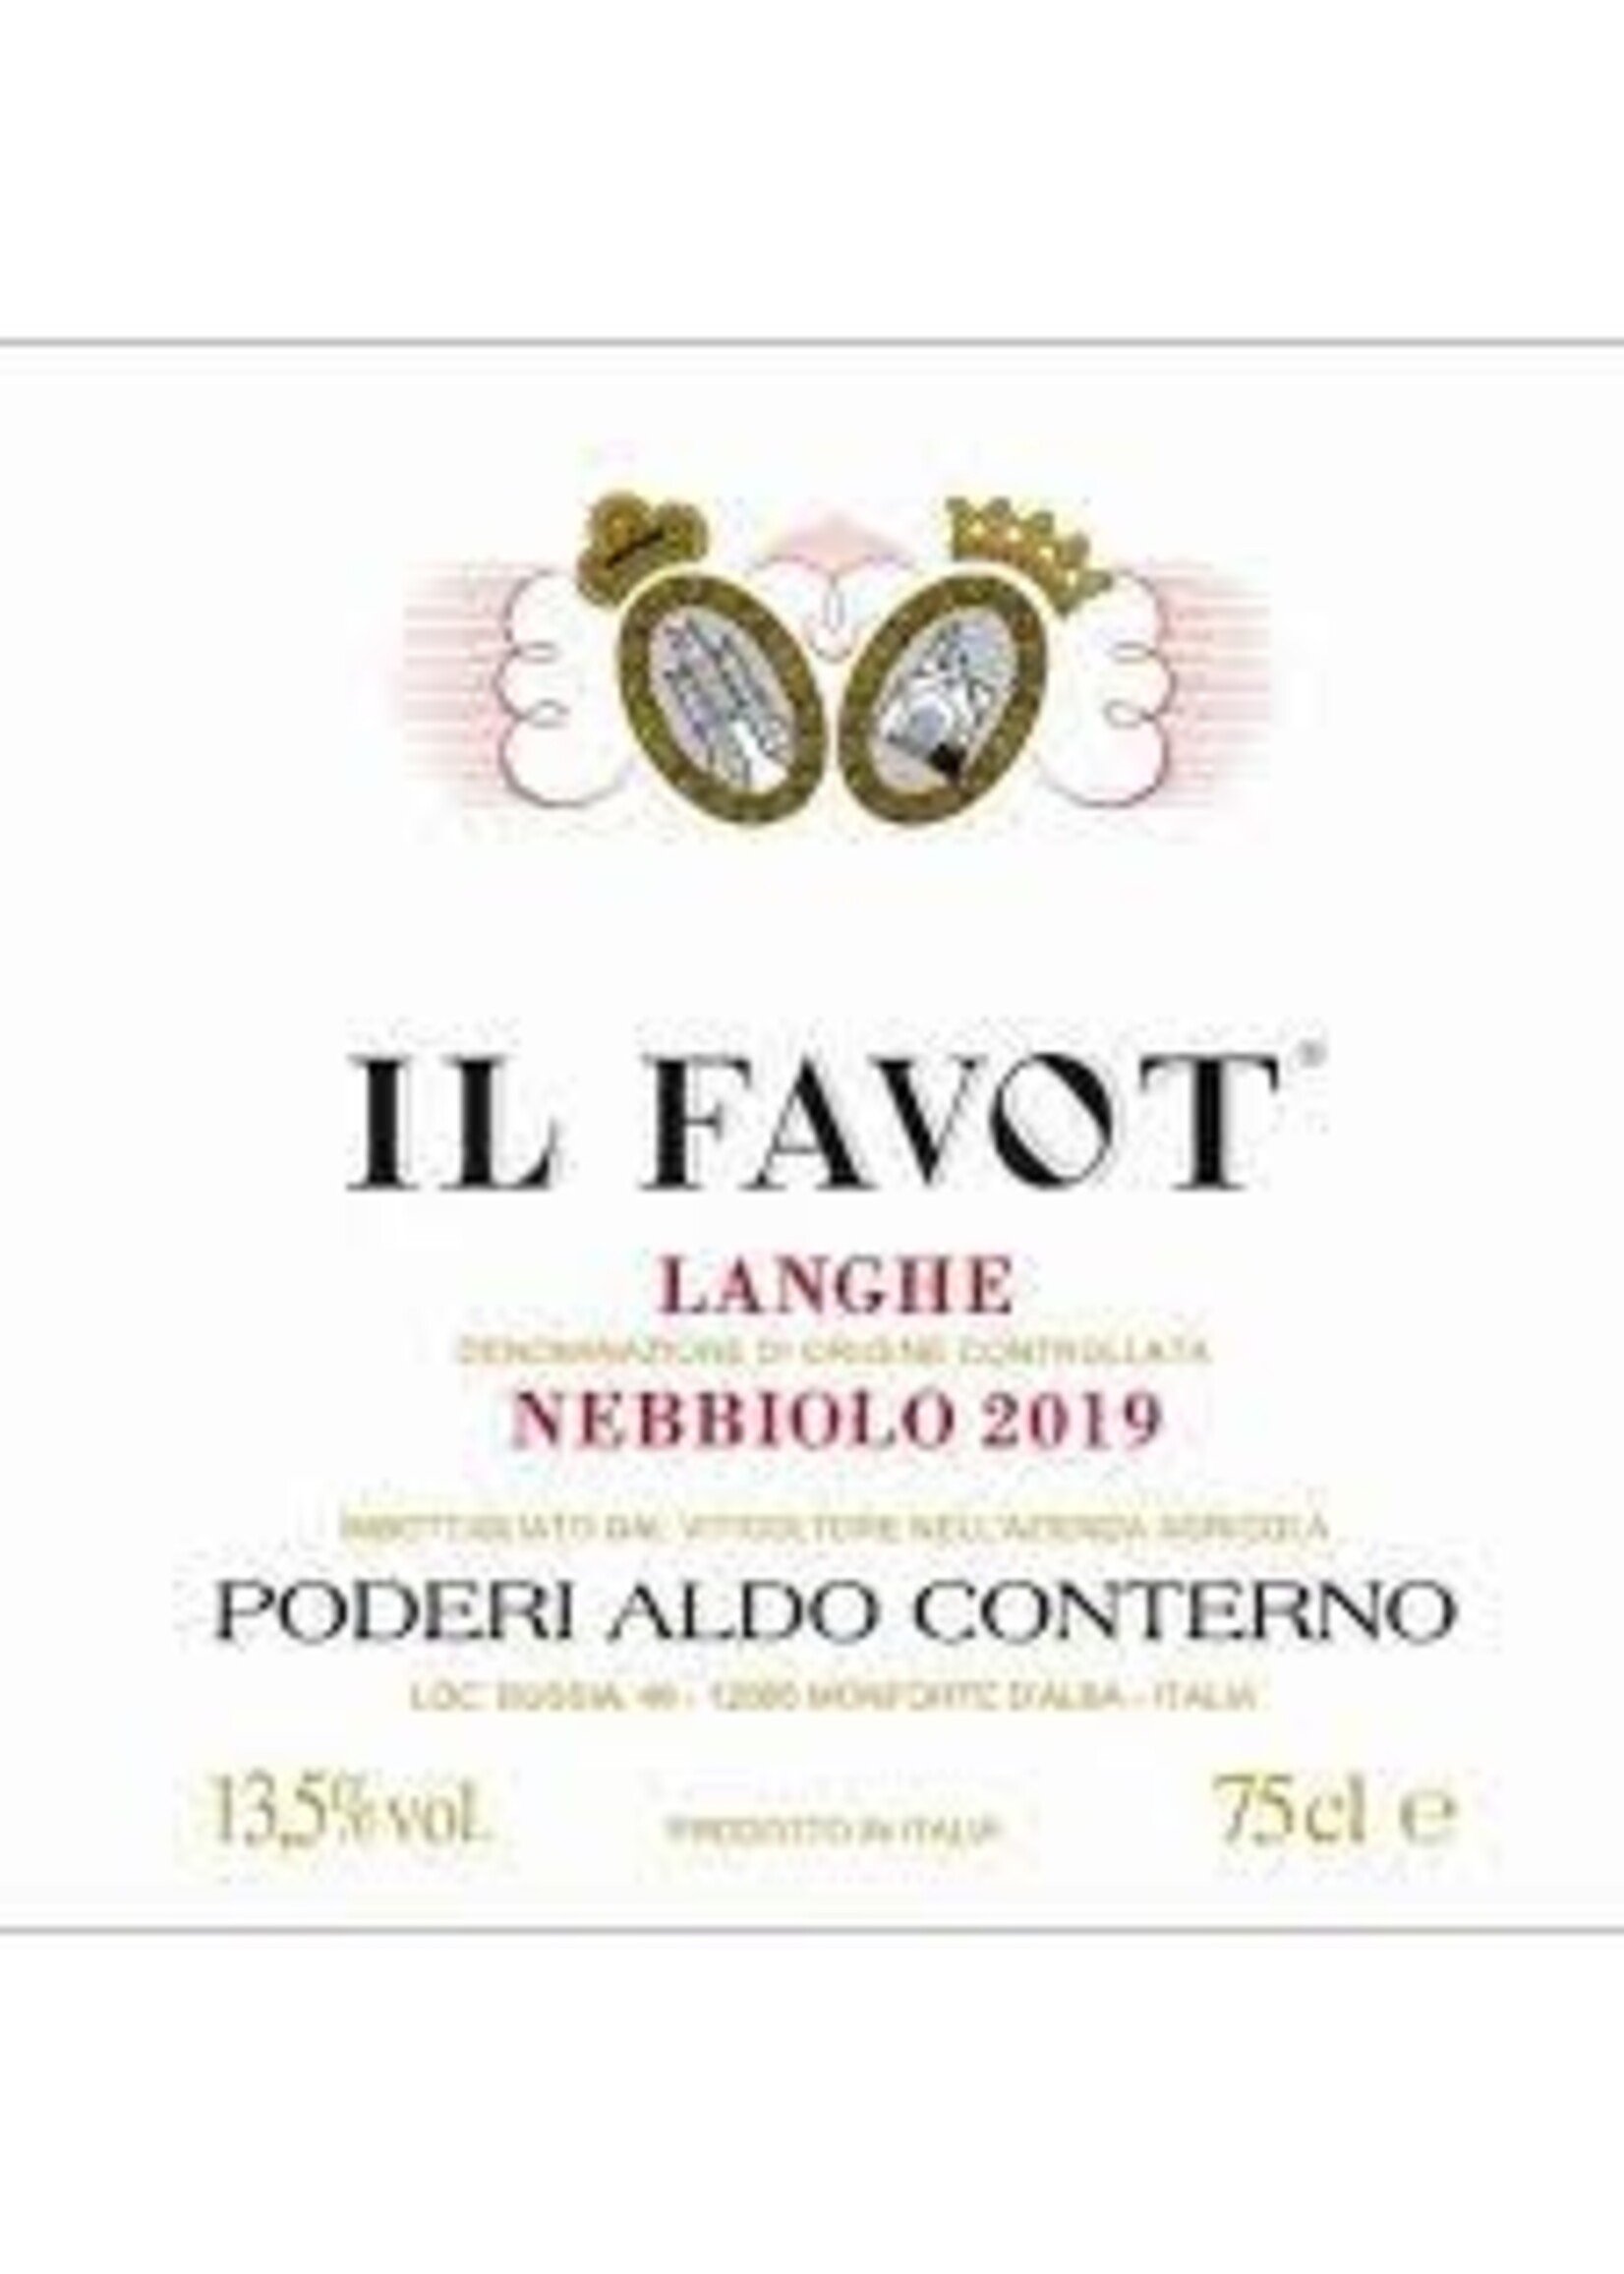 Poderi Aldo Conterno 2019 'Il Favot' Langhe Nebbiolo 750ml